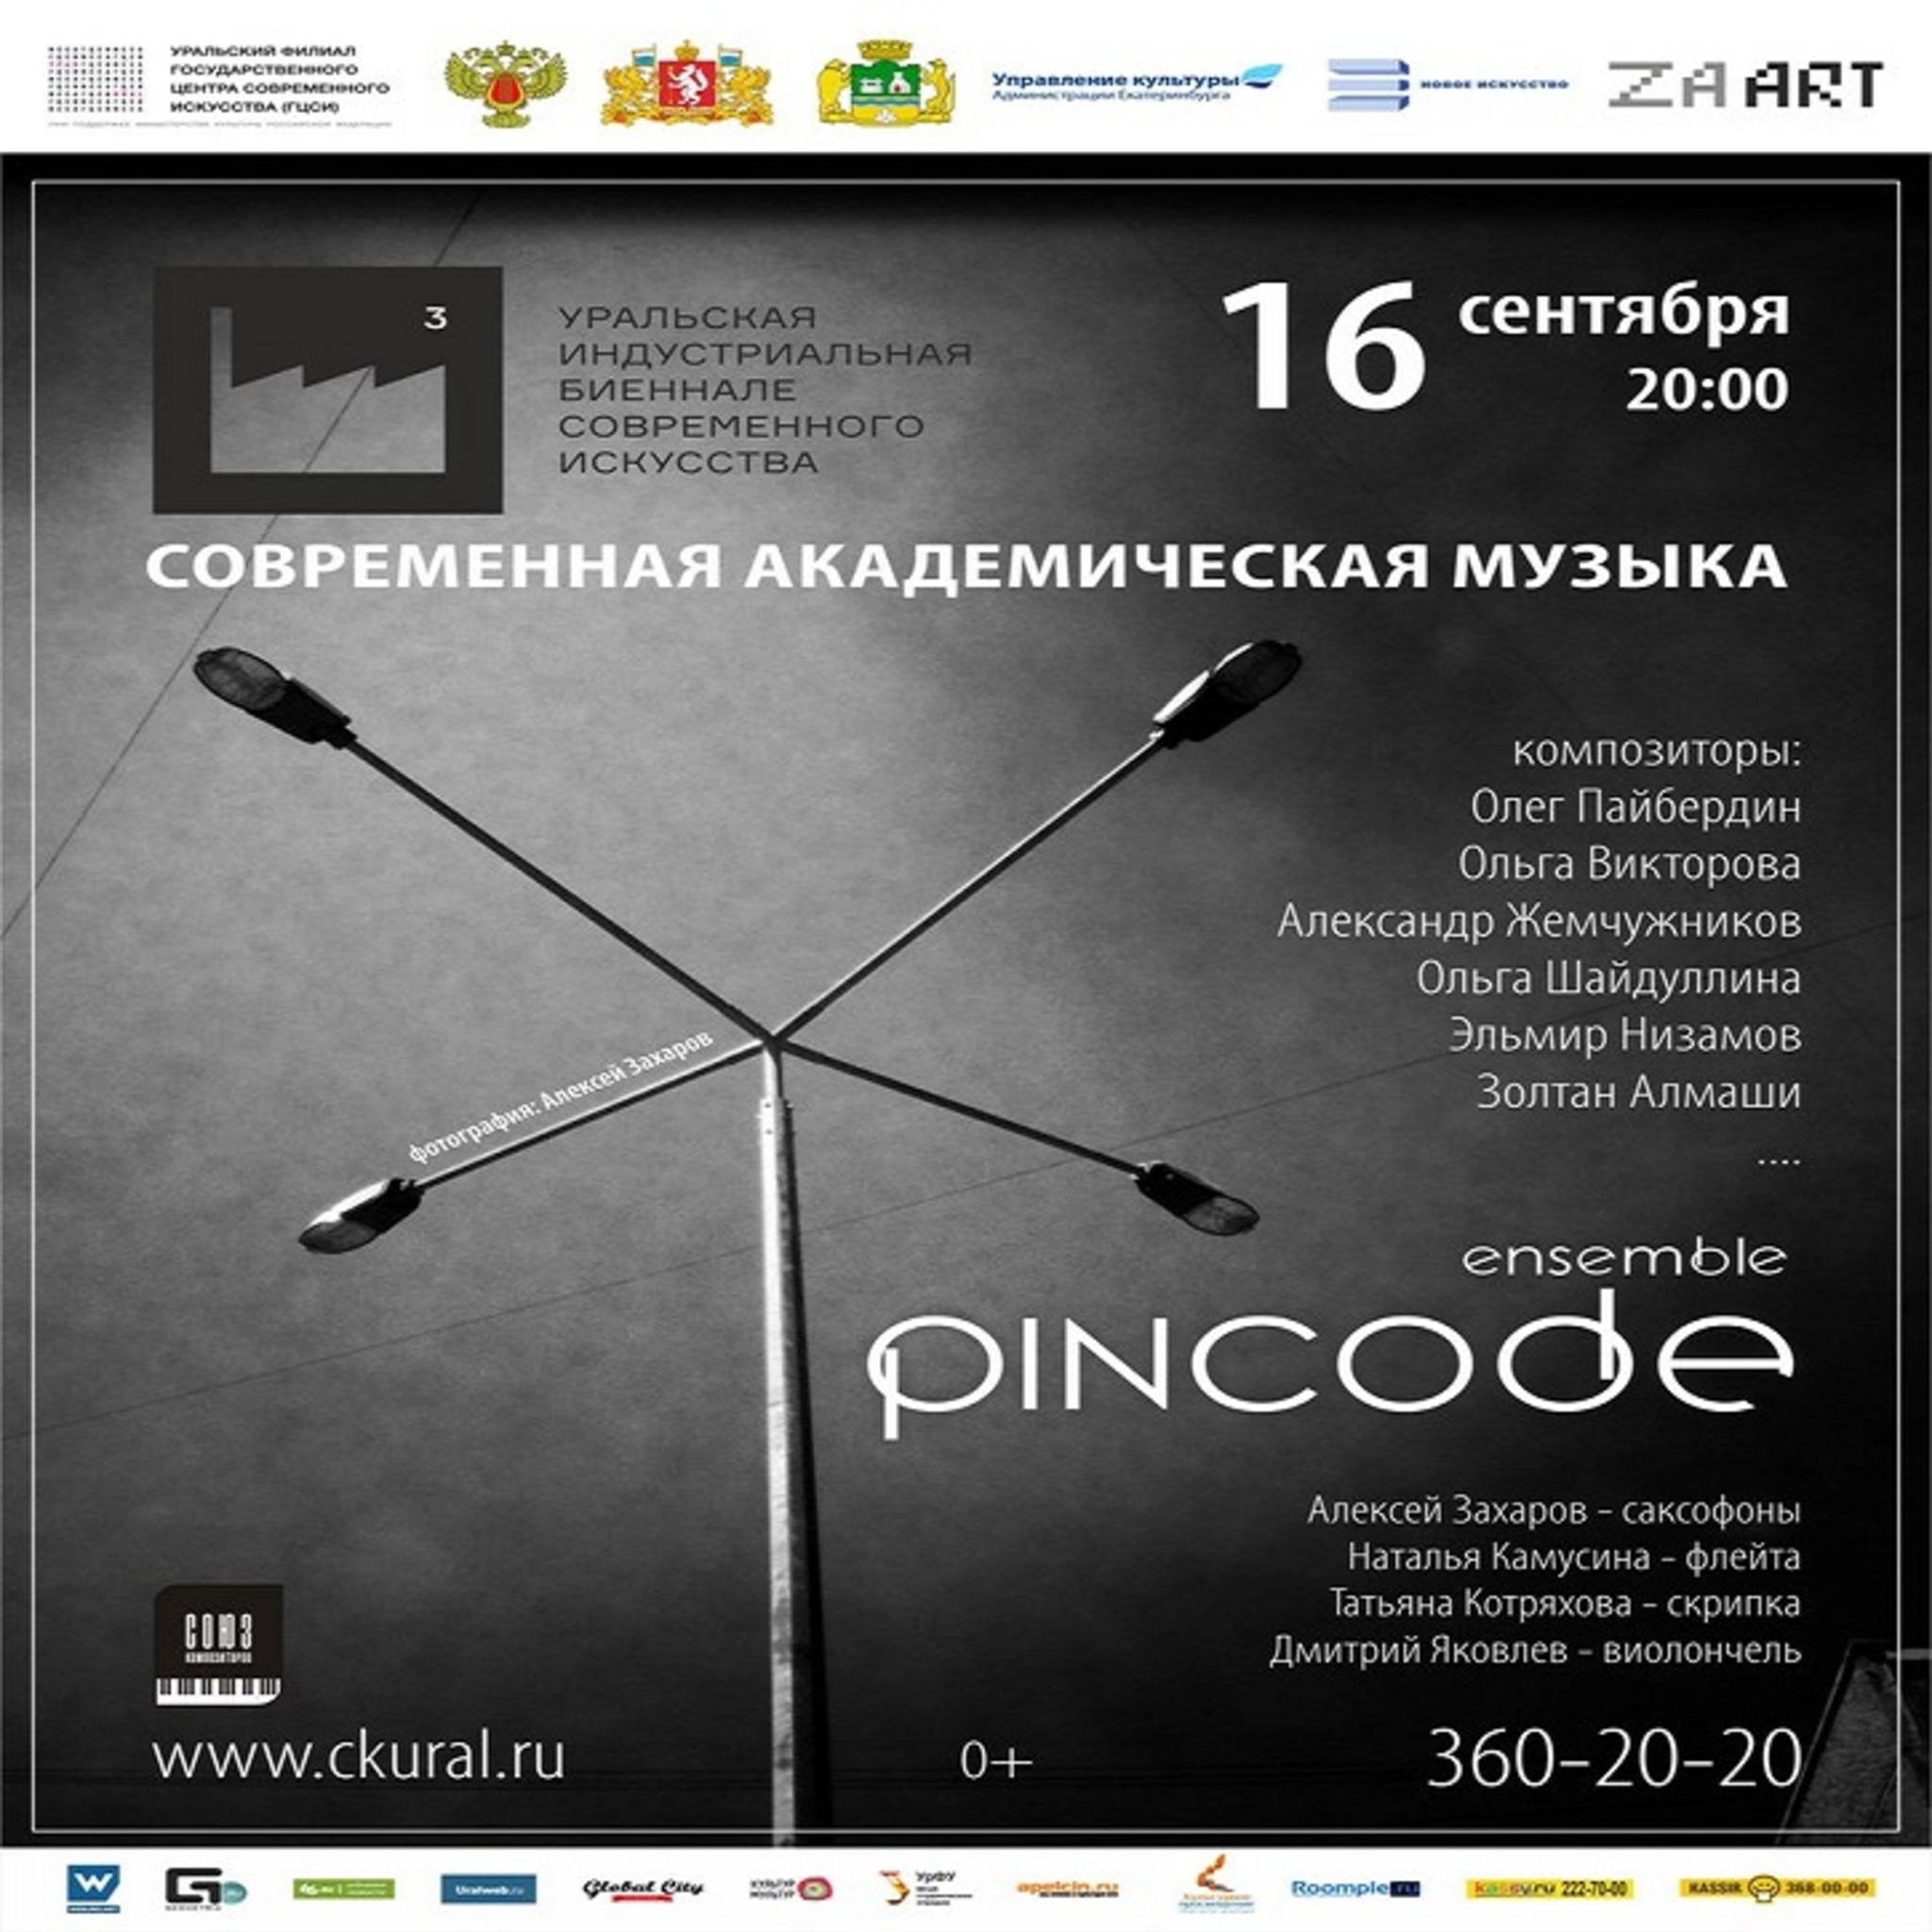 Pincode Ensemble